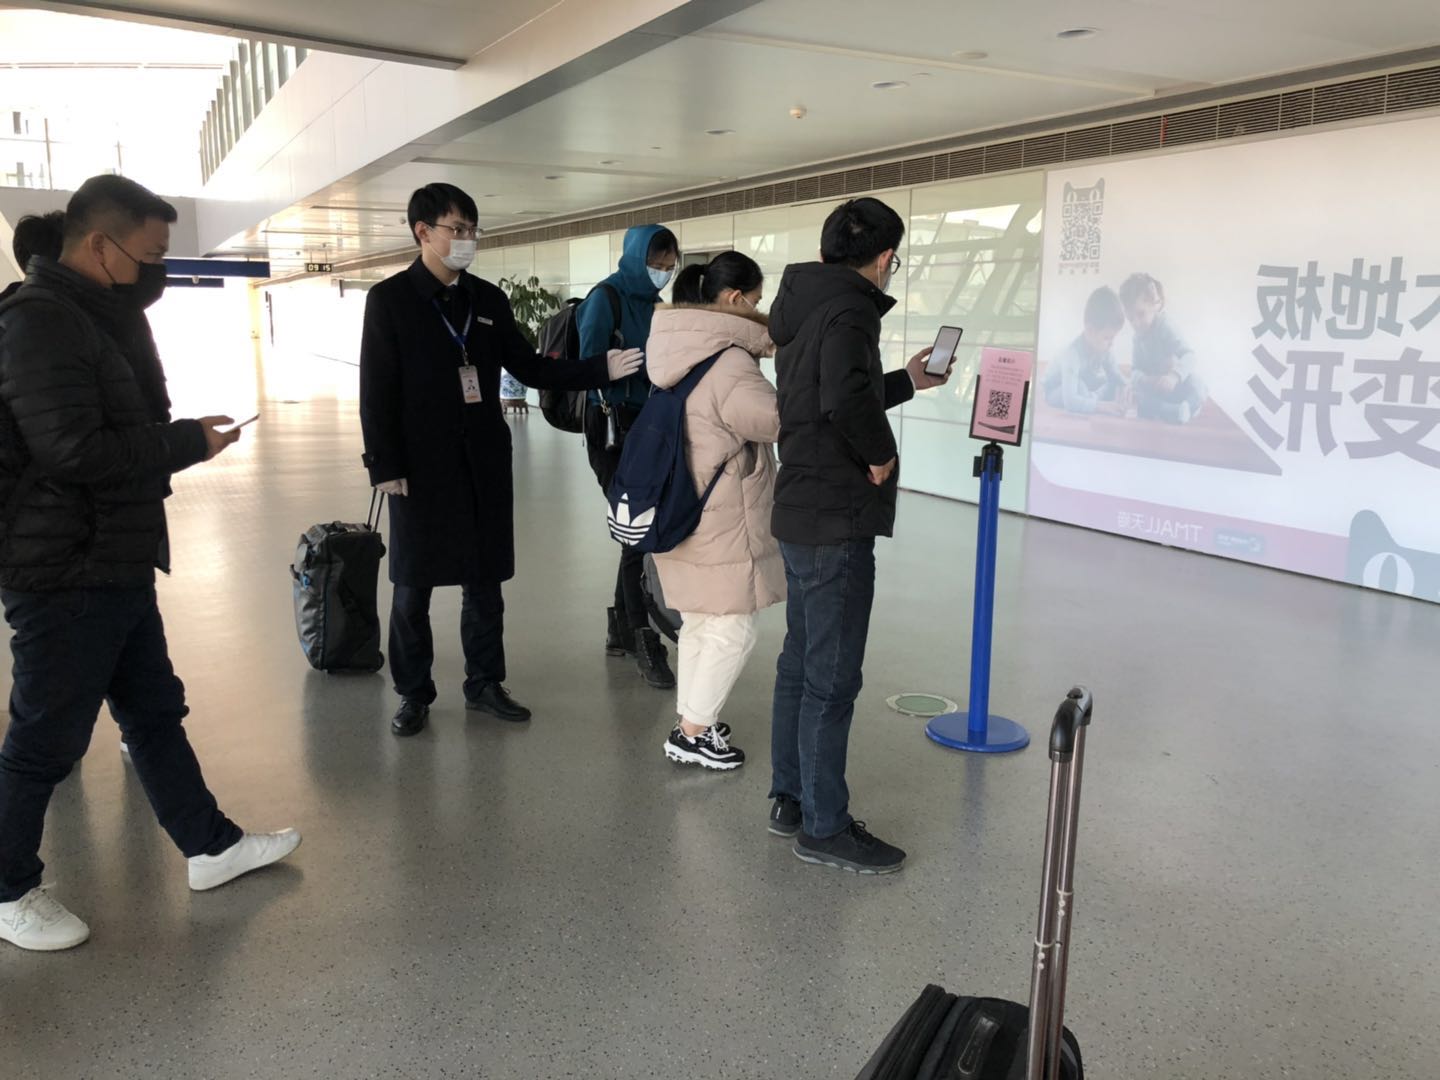 合肥新桥国际机场对返(来)肥人员进行健康登记检查